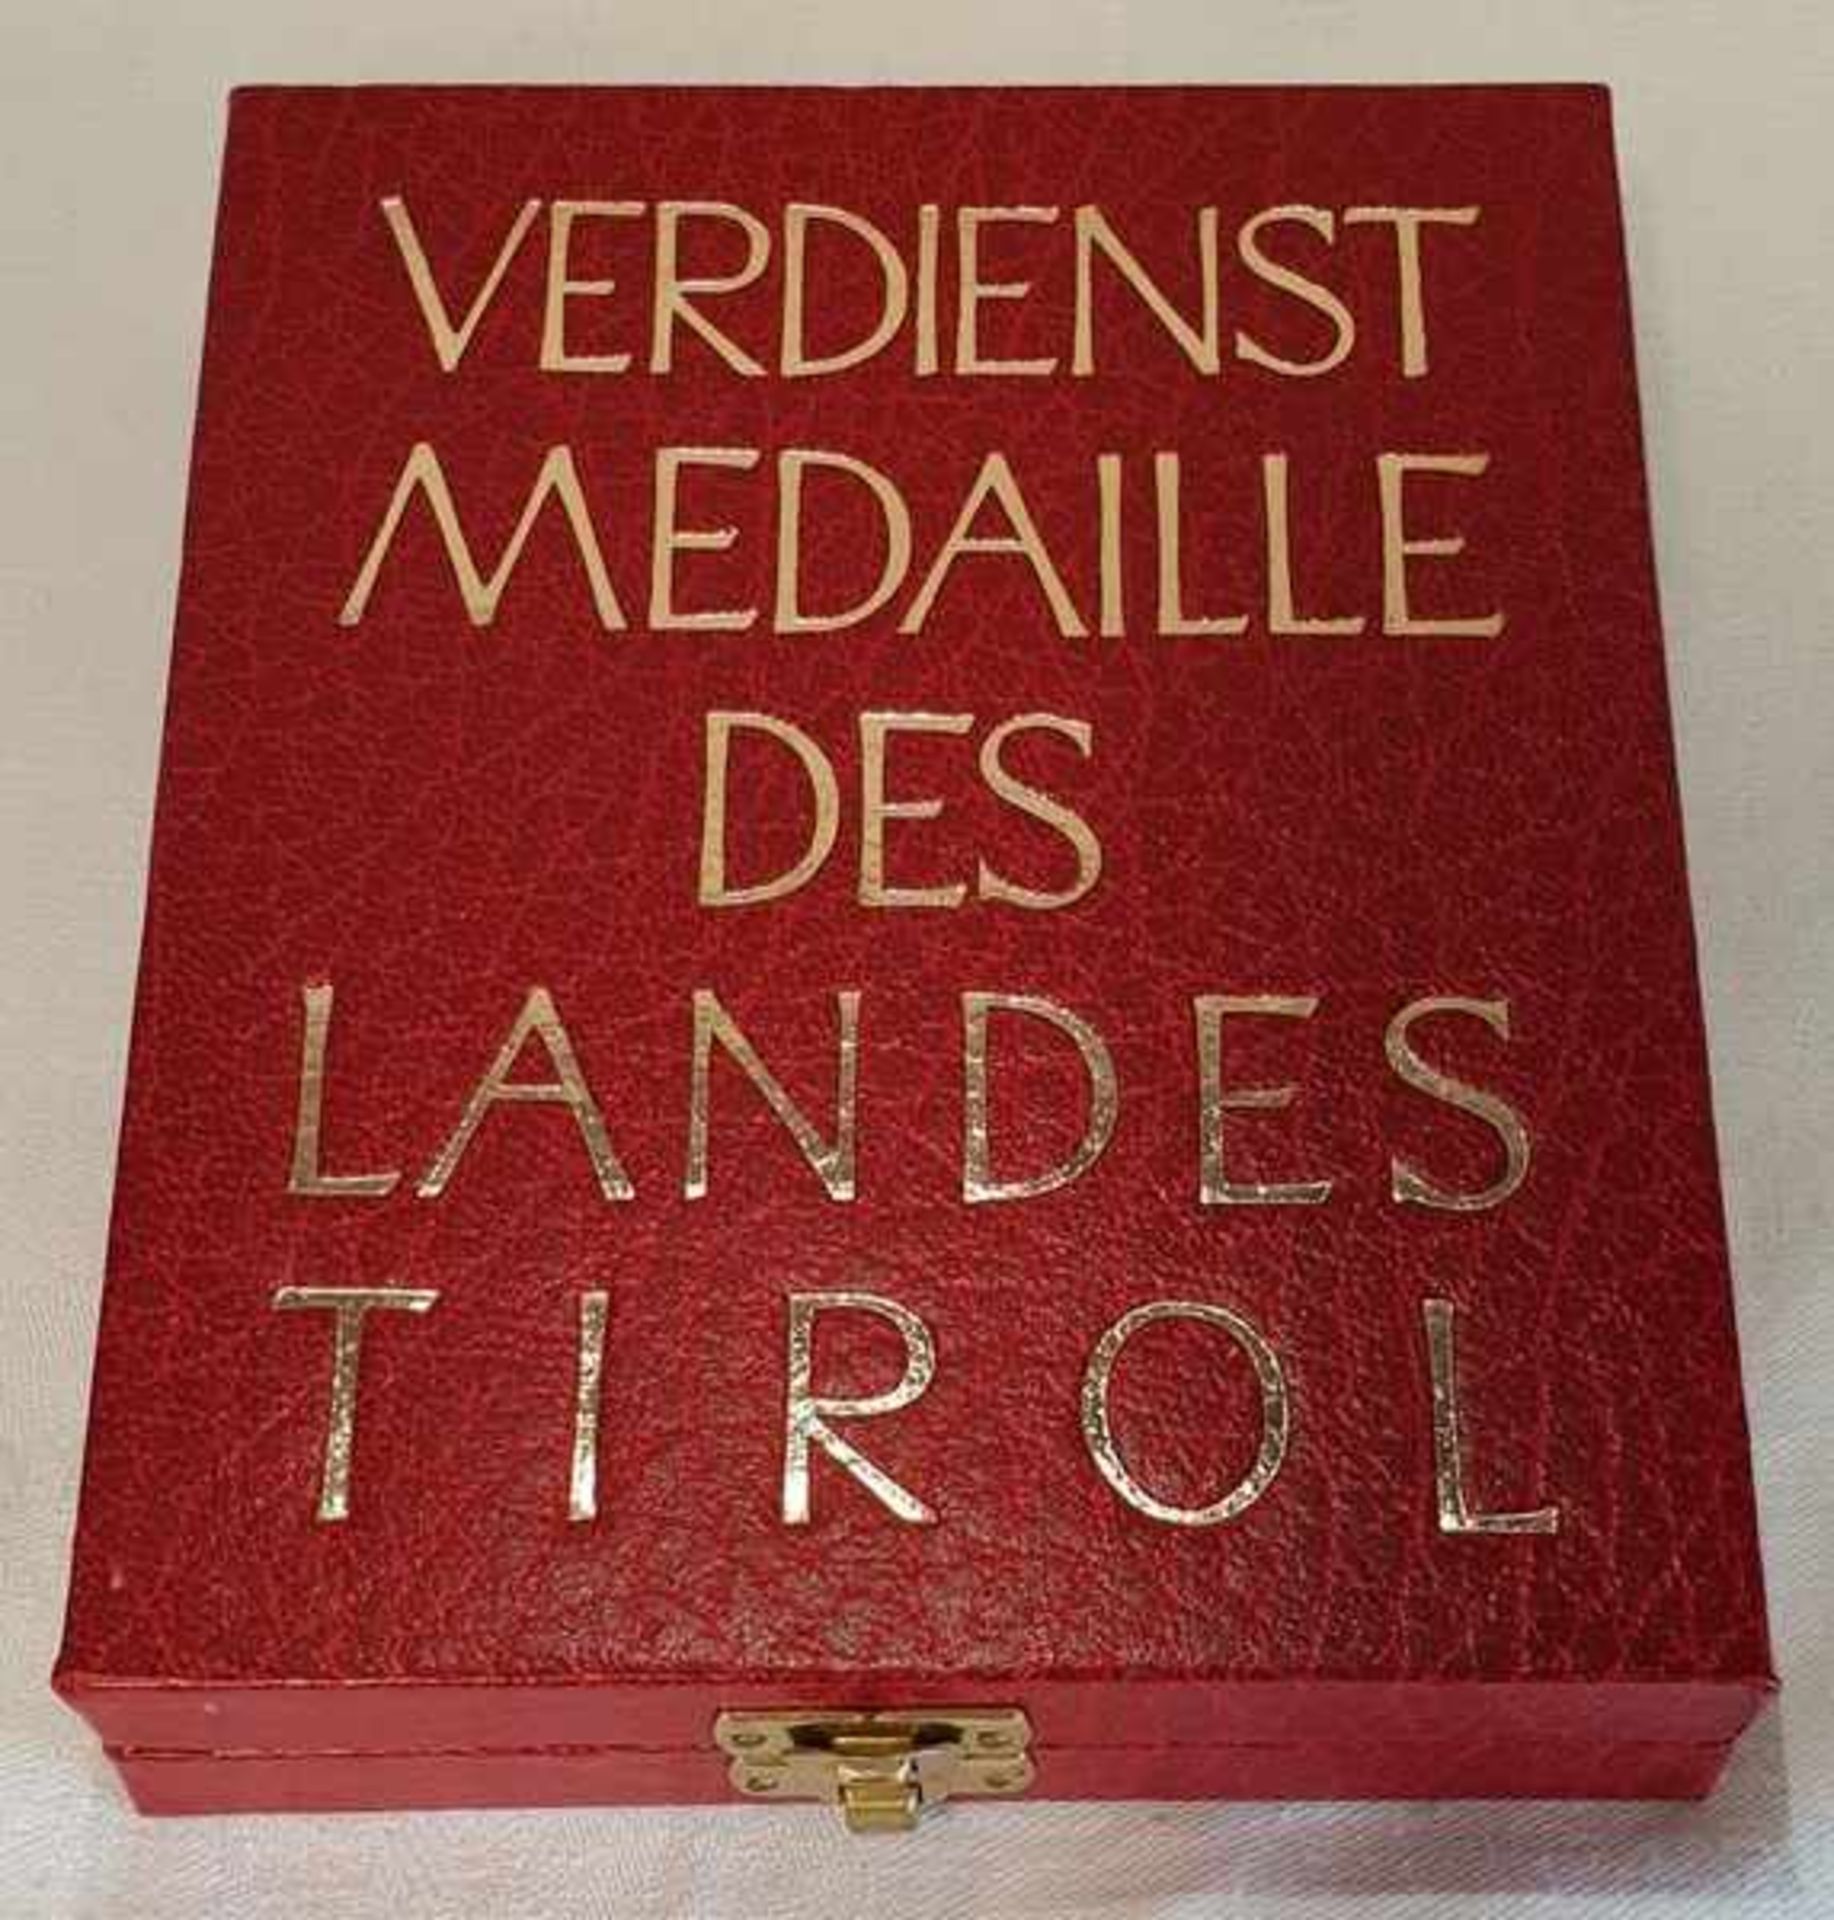 Verdienstmedaille des Landes TirolAE - vergoldet, mit Überhöhung und orig. Band im goldbedruckten - Bild 2 aus 2